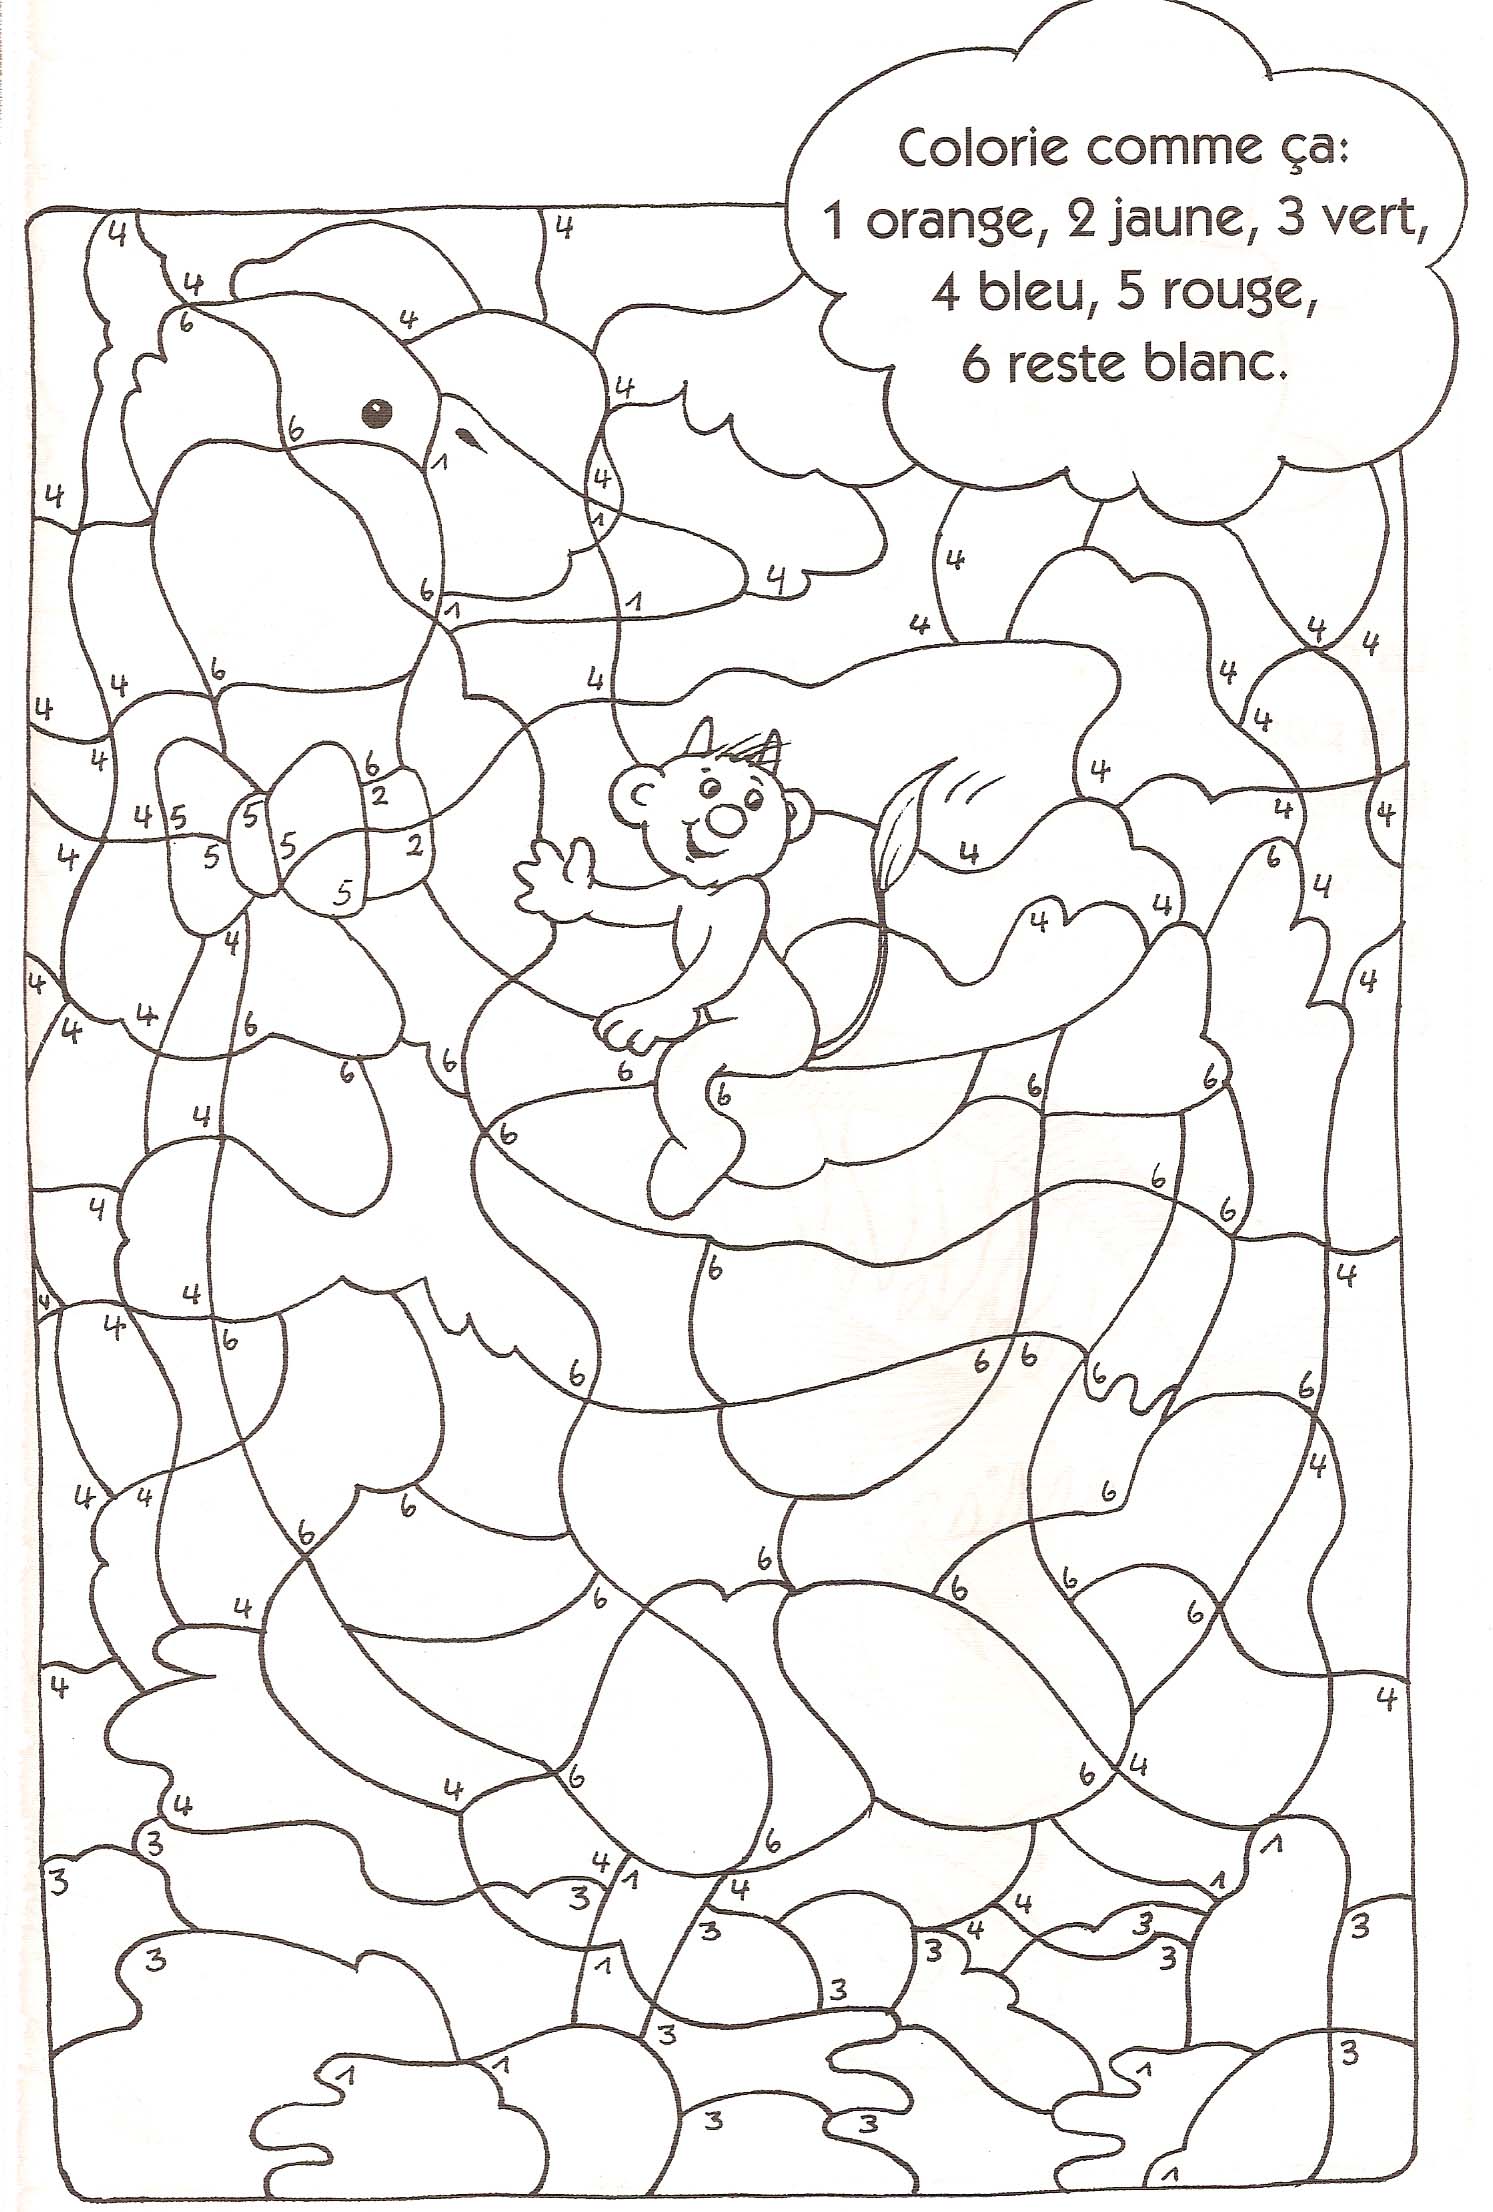 Image #19853 - Coloriage dessin à numéro gratuit